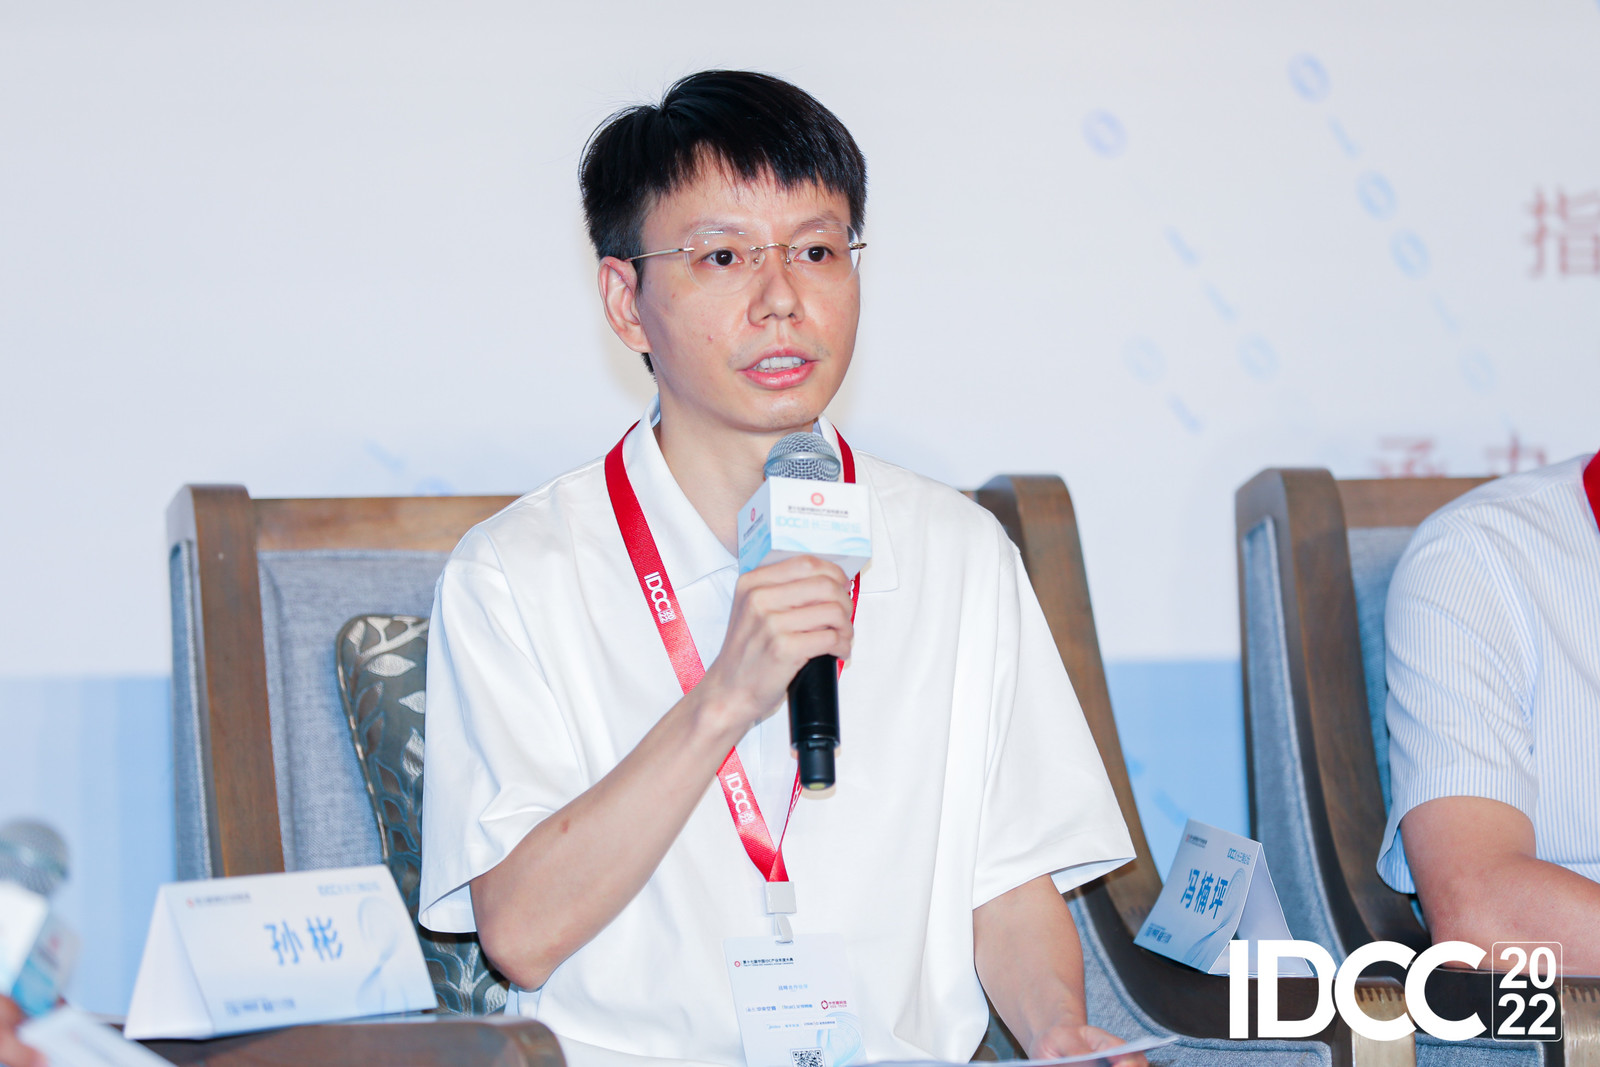 中企网络通信技术有限公司首席数据算法专家 冯楠坪-1